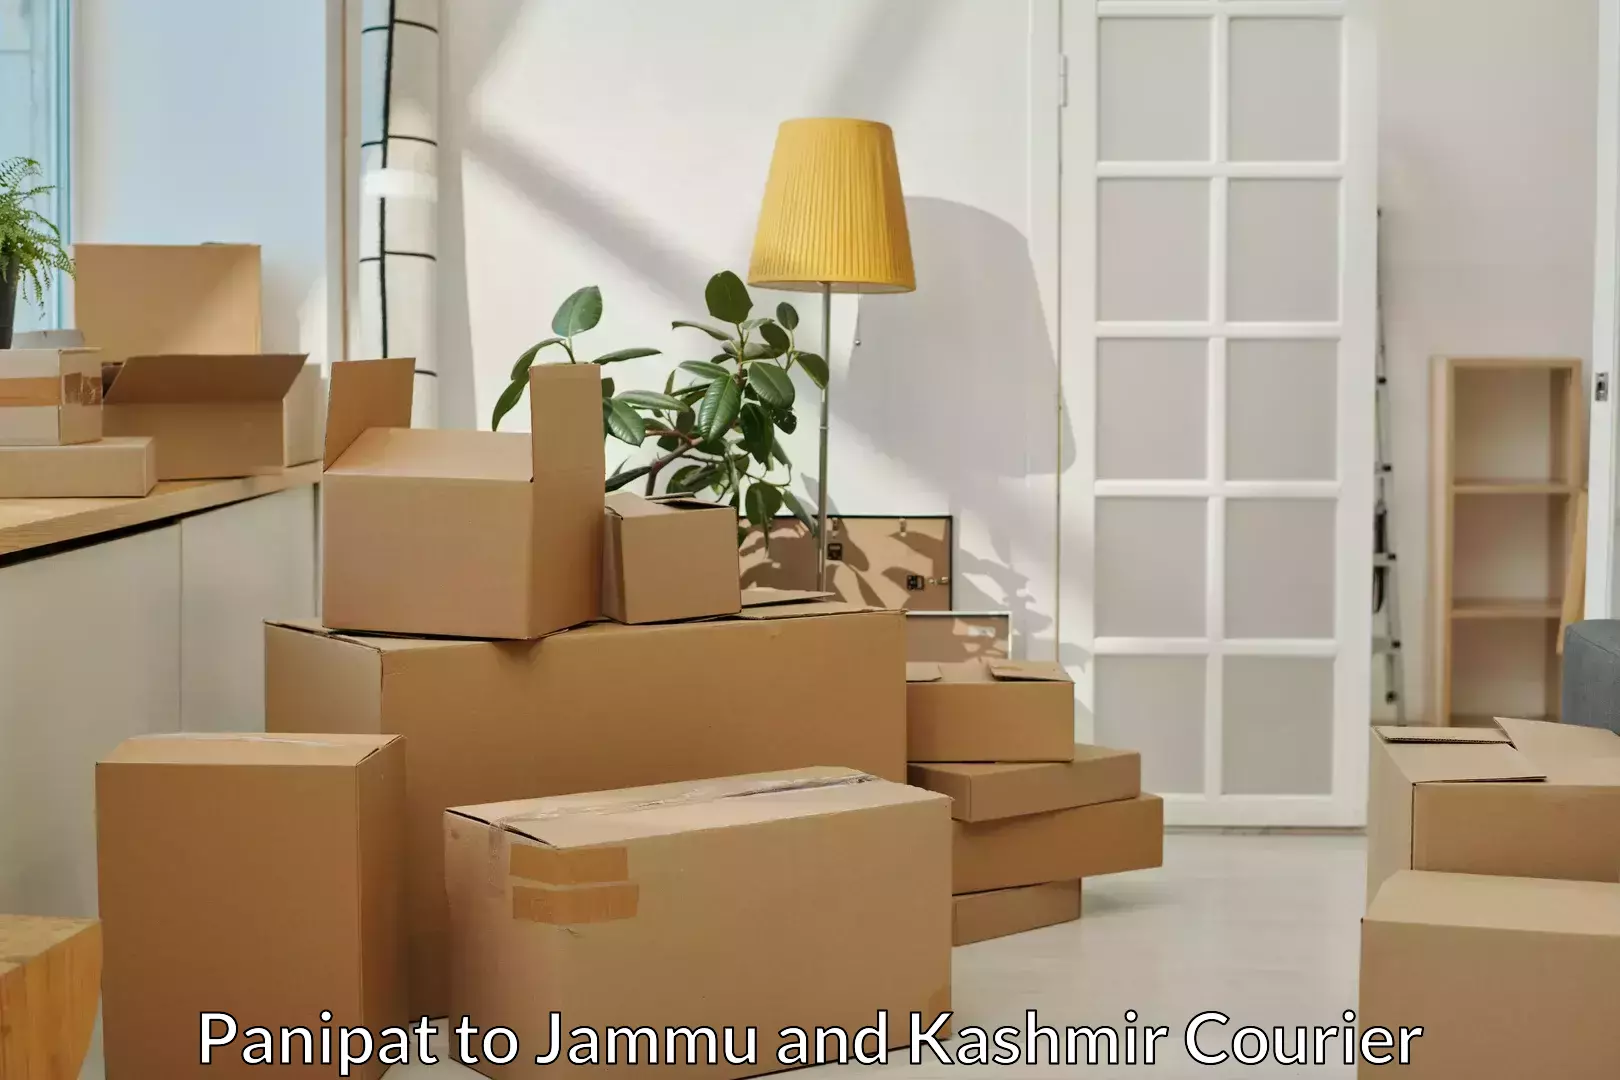 Furniture transport company Panipat to Jammu and Kashmir